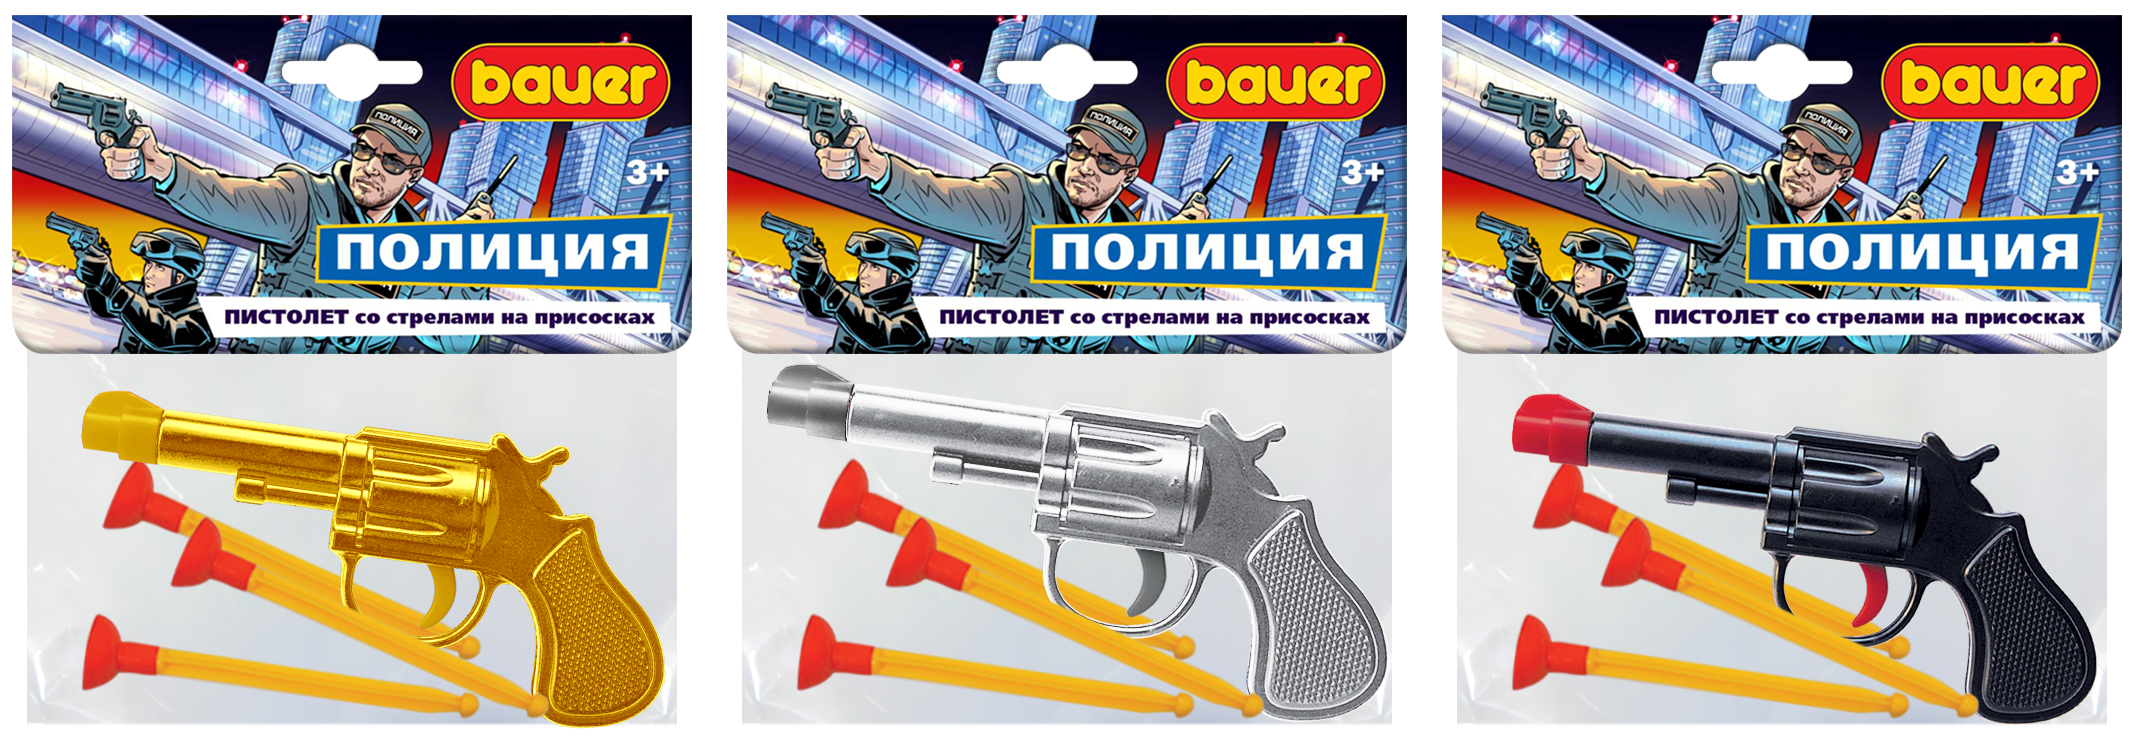 Пистолет игрушечный Bauer Полиция со стрелами на присосках